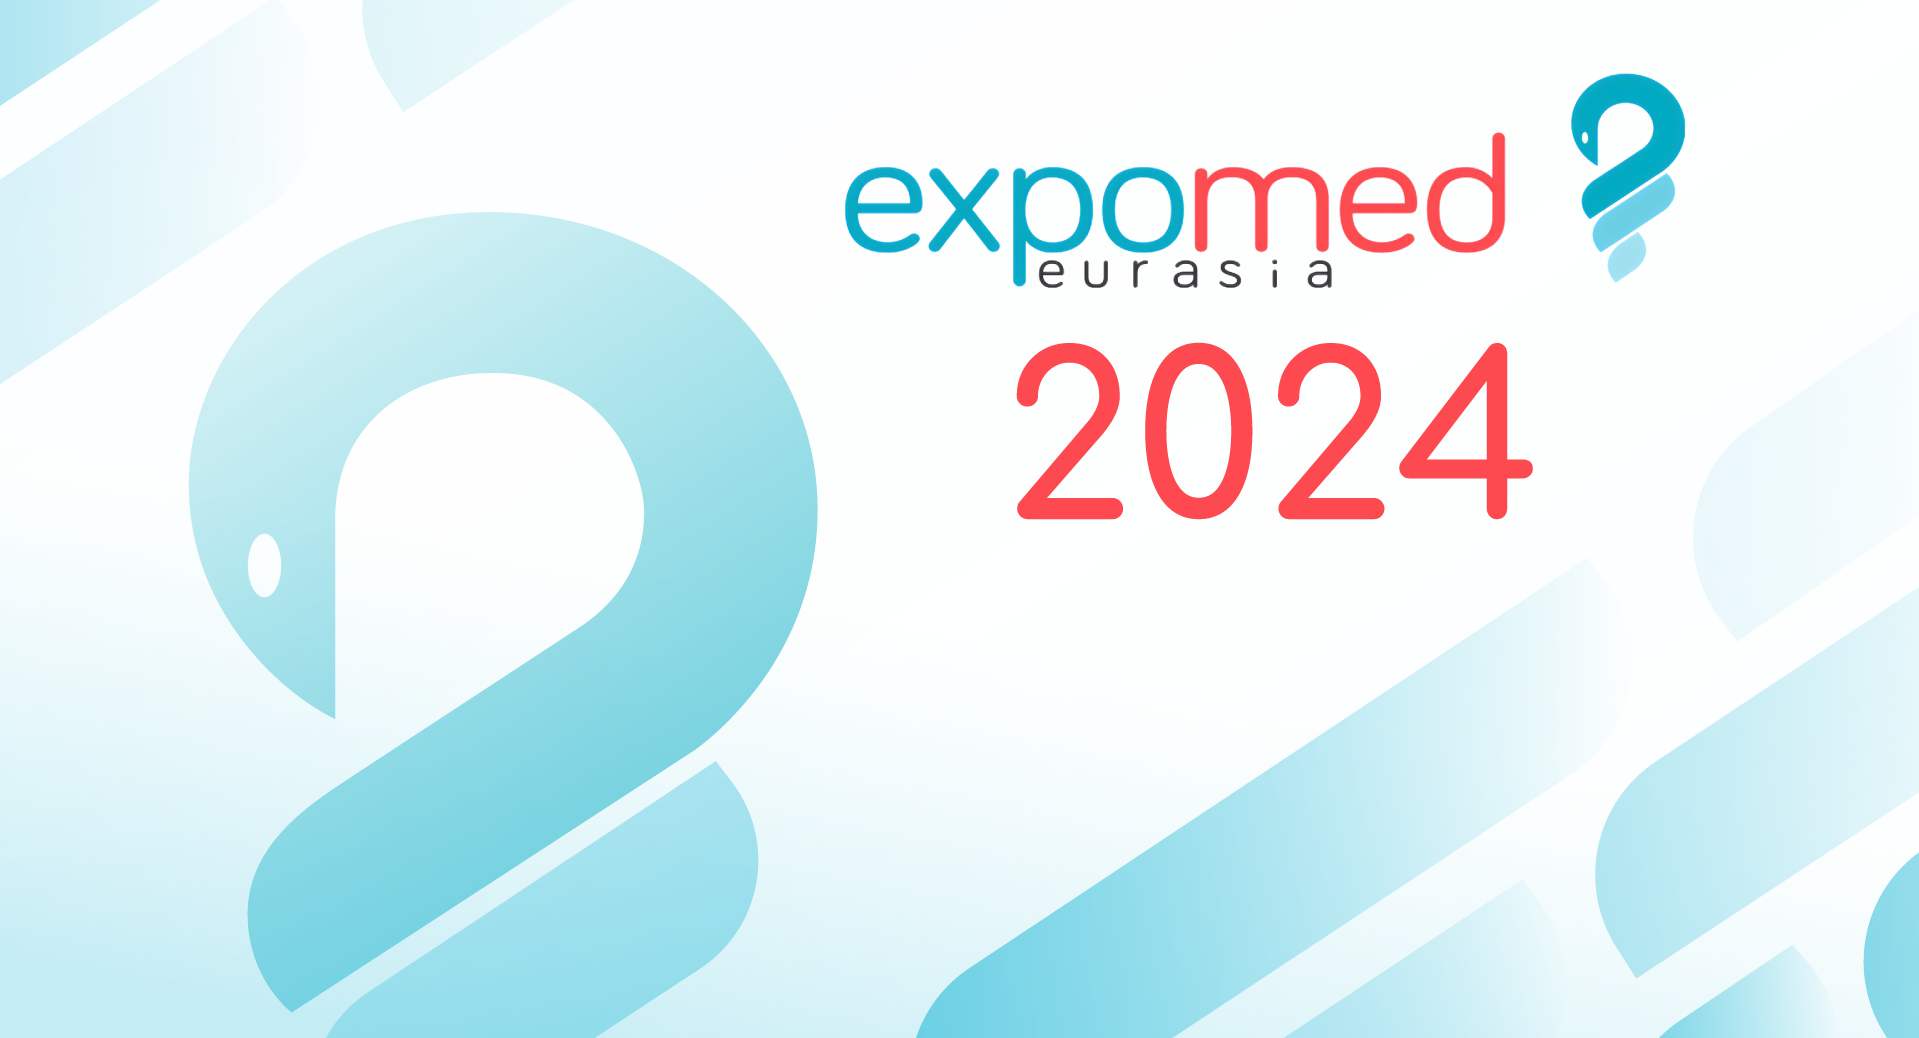 Expomed Eurasia 2024